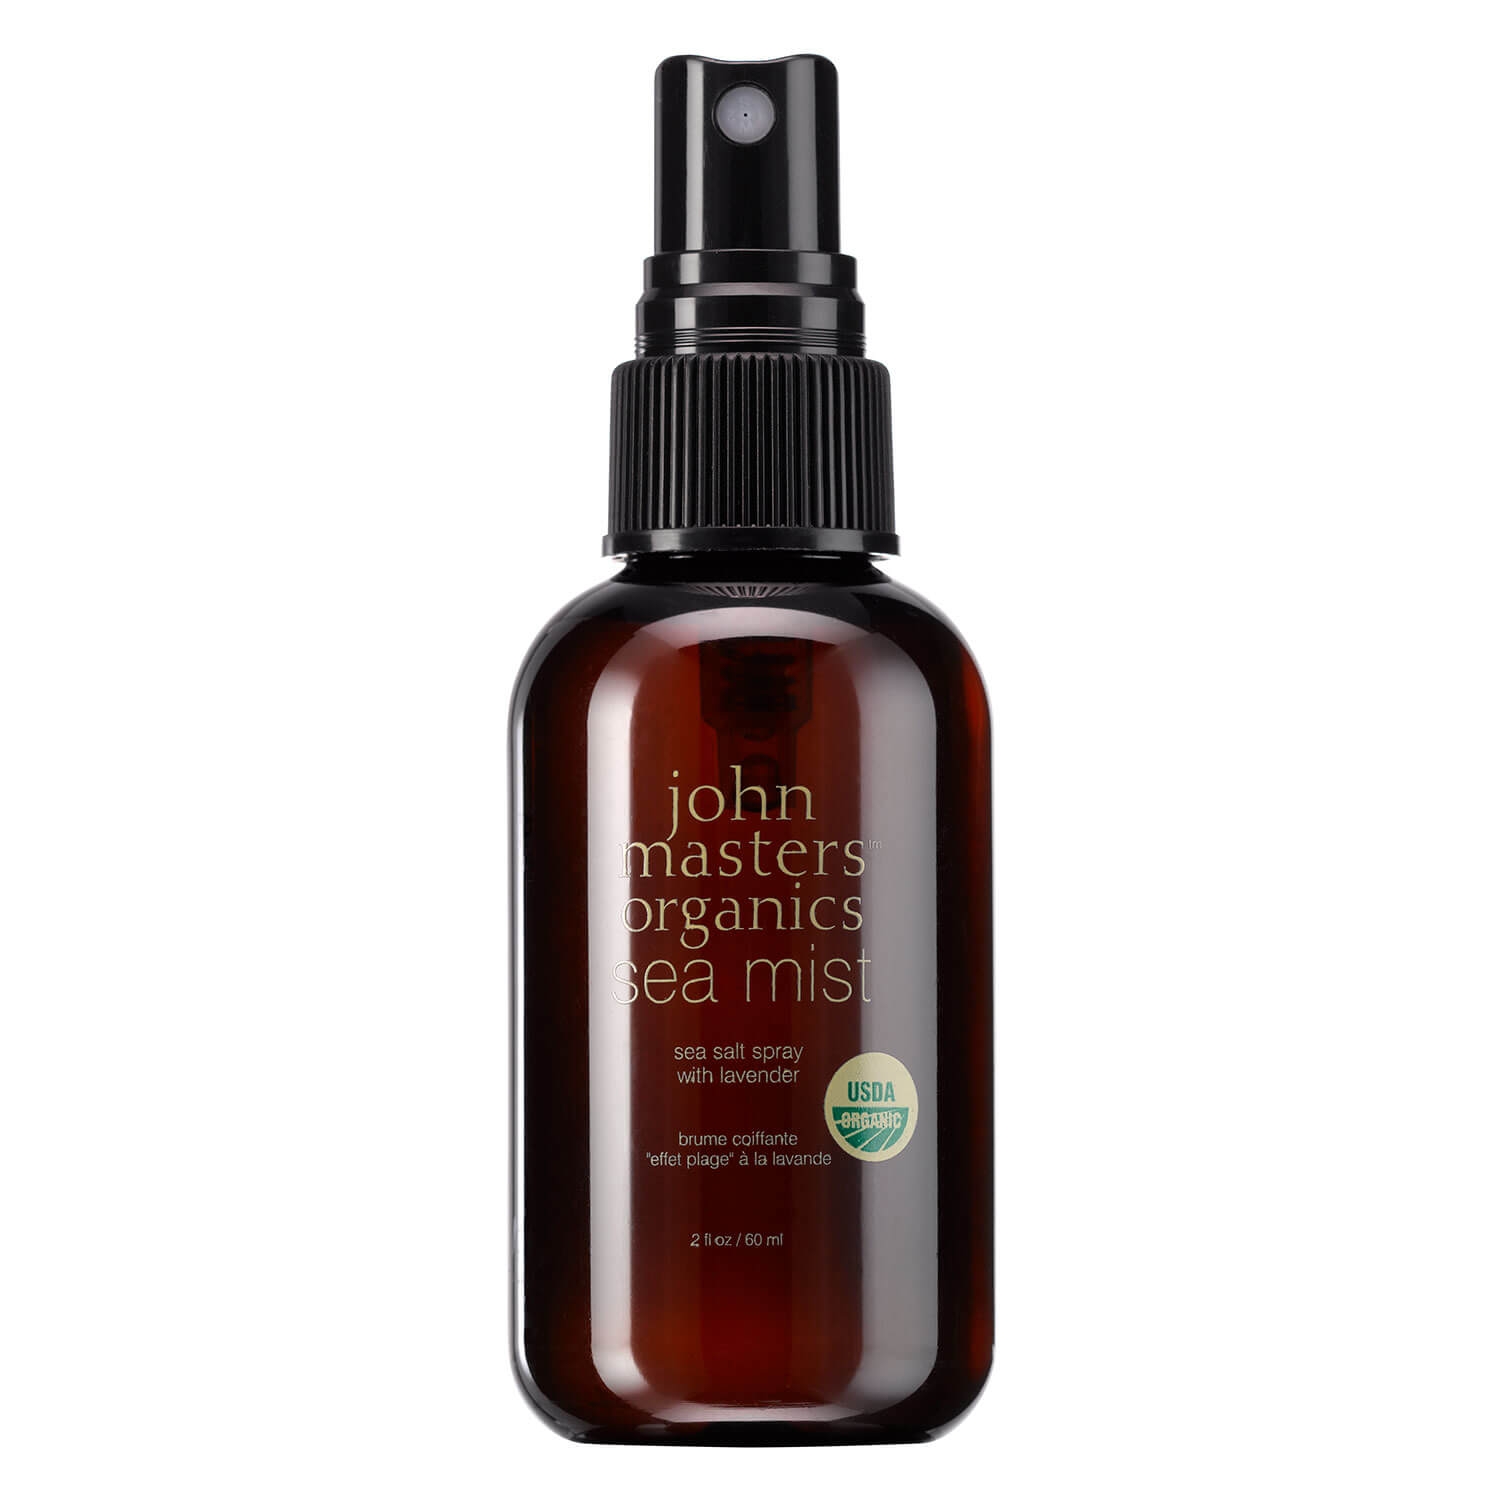 Produktbild von JMO Hair Care - Sea Mist Sea Salt Spray with Lavender